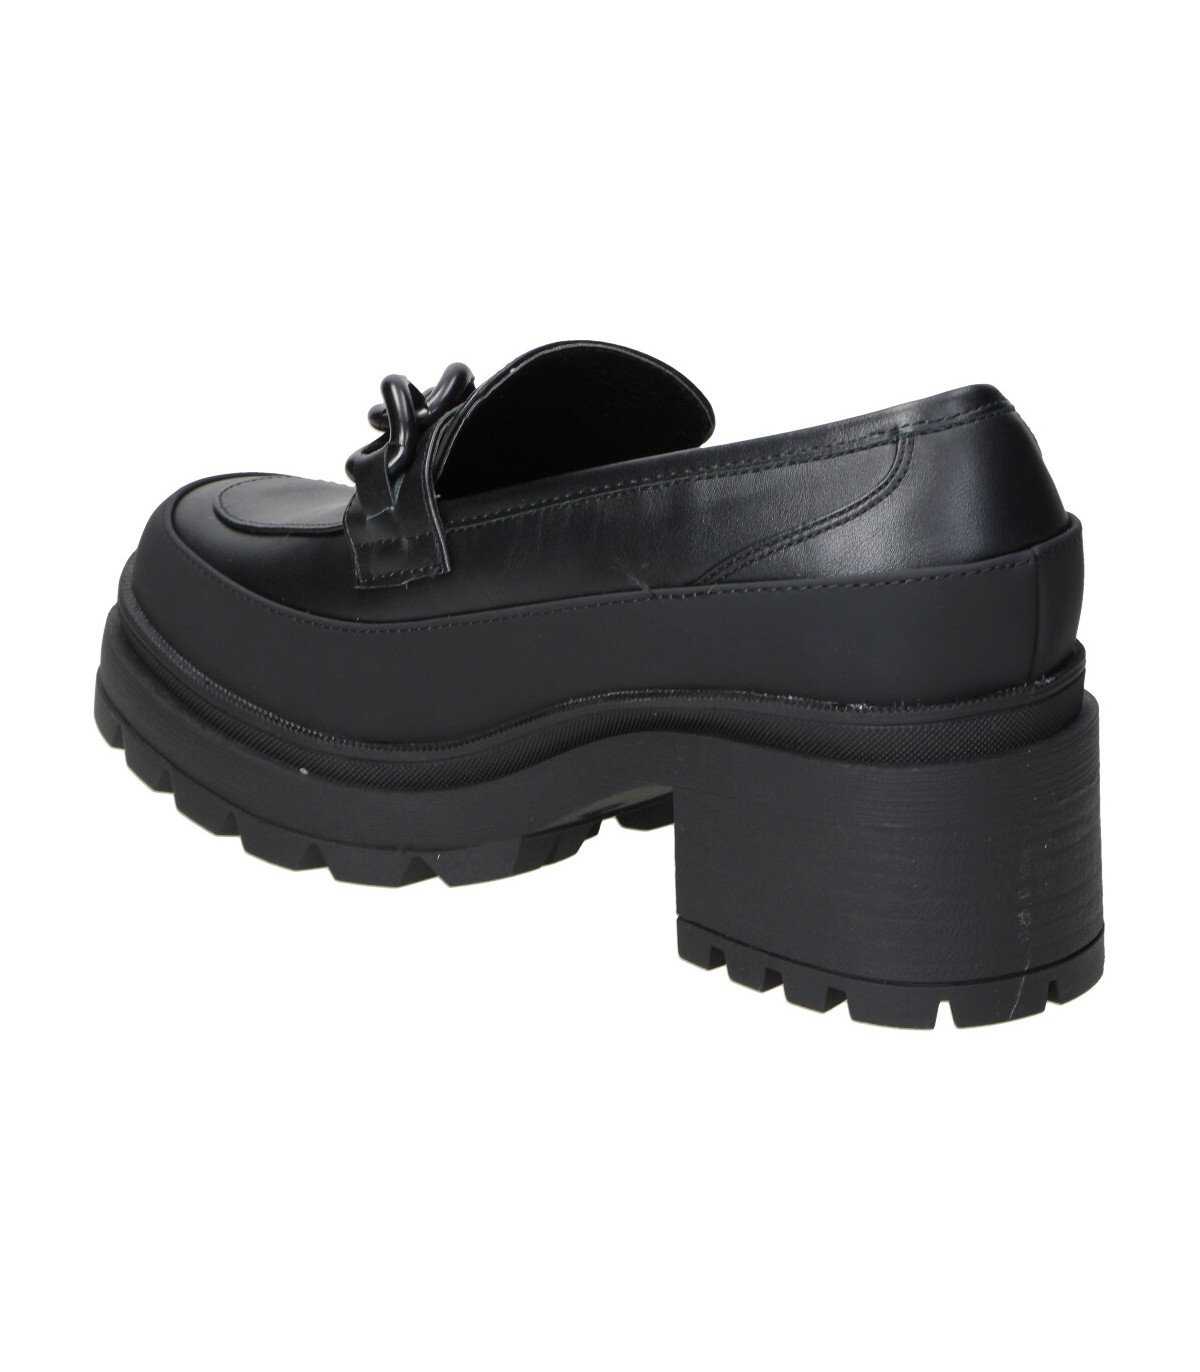 Zapatos negros con tacón de mujer CHK10 online en